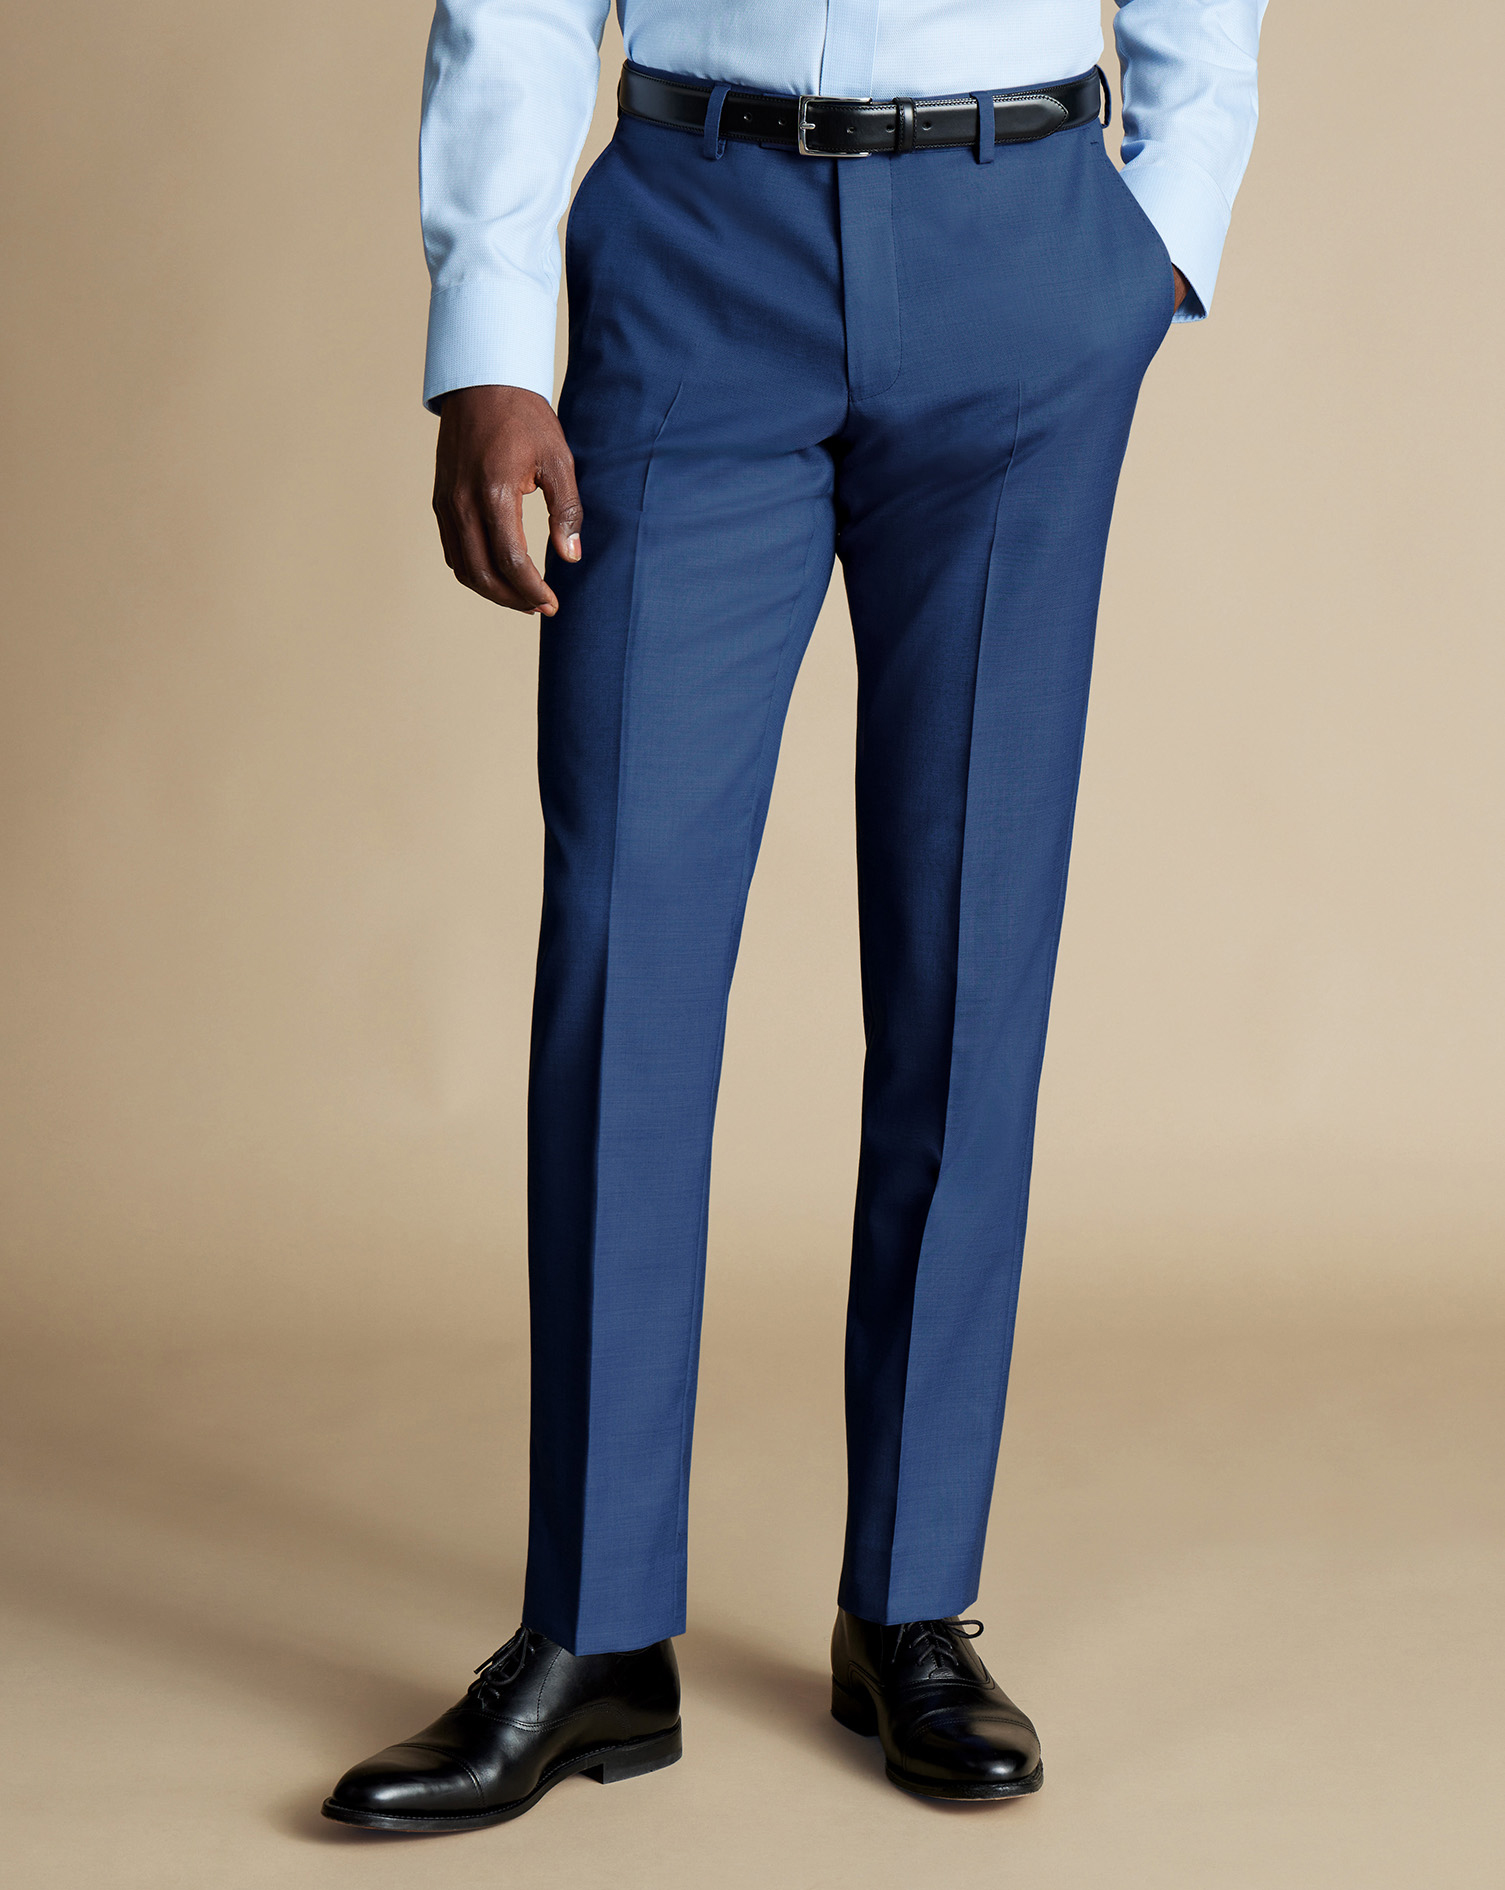 Men's Charles Tyrwhitt Ultimate Performance Sharkskin Suit Trousers - Indigo Blue Size 32/38
